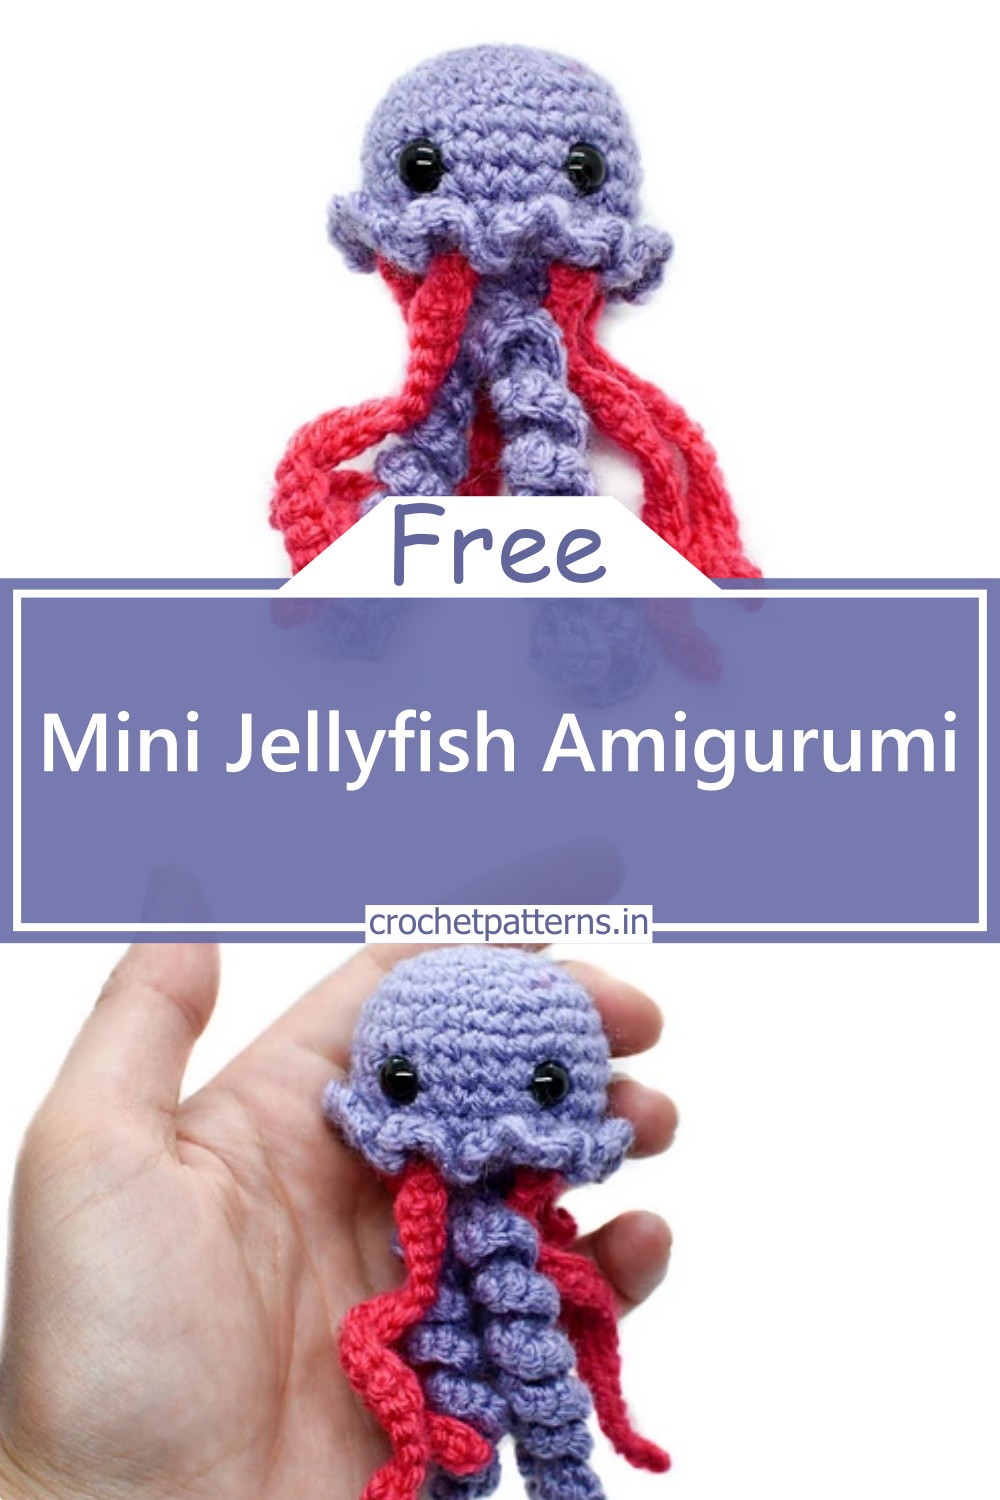 Mini Jellyfish Amigurumi